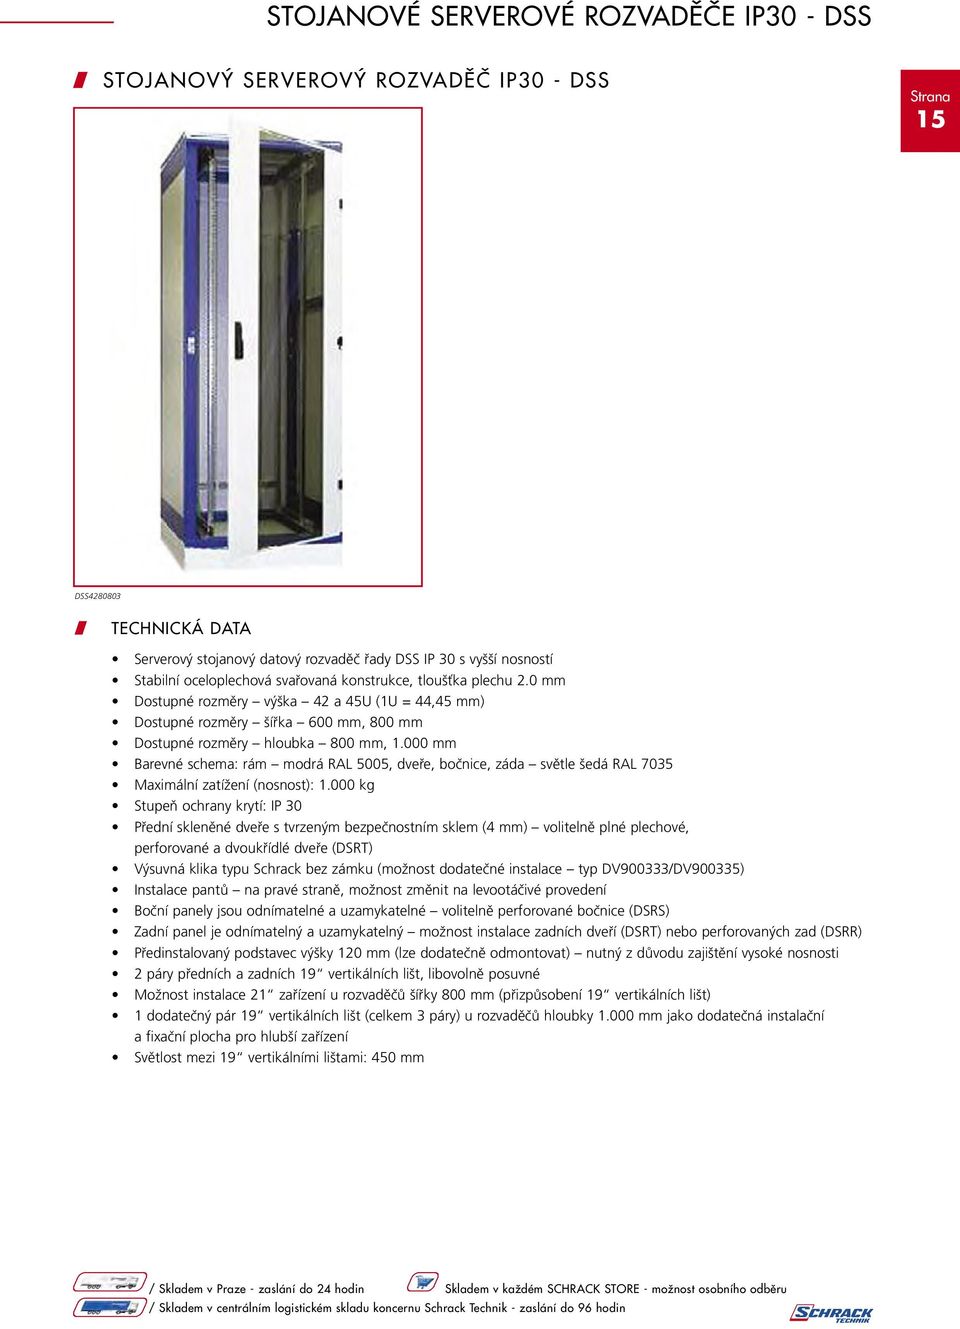 000 mm Barevné schema: rám modrá RAL 5005, dveře, bočnice, záda světle šedá RAL 7035 Maximální zatížení (nosnost): 1.